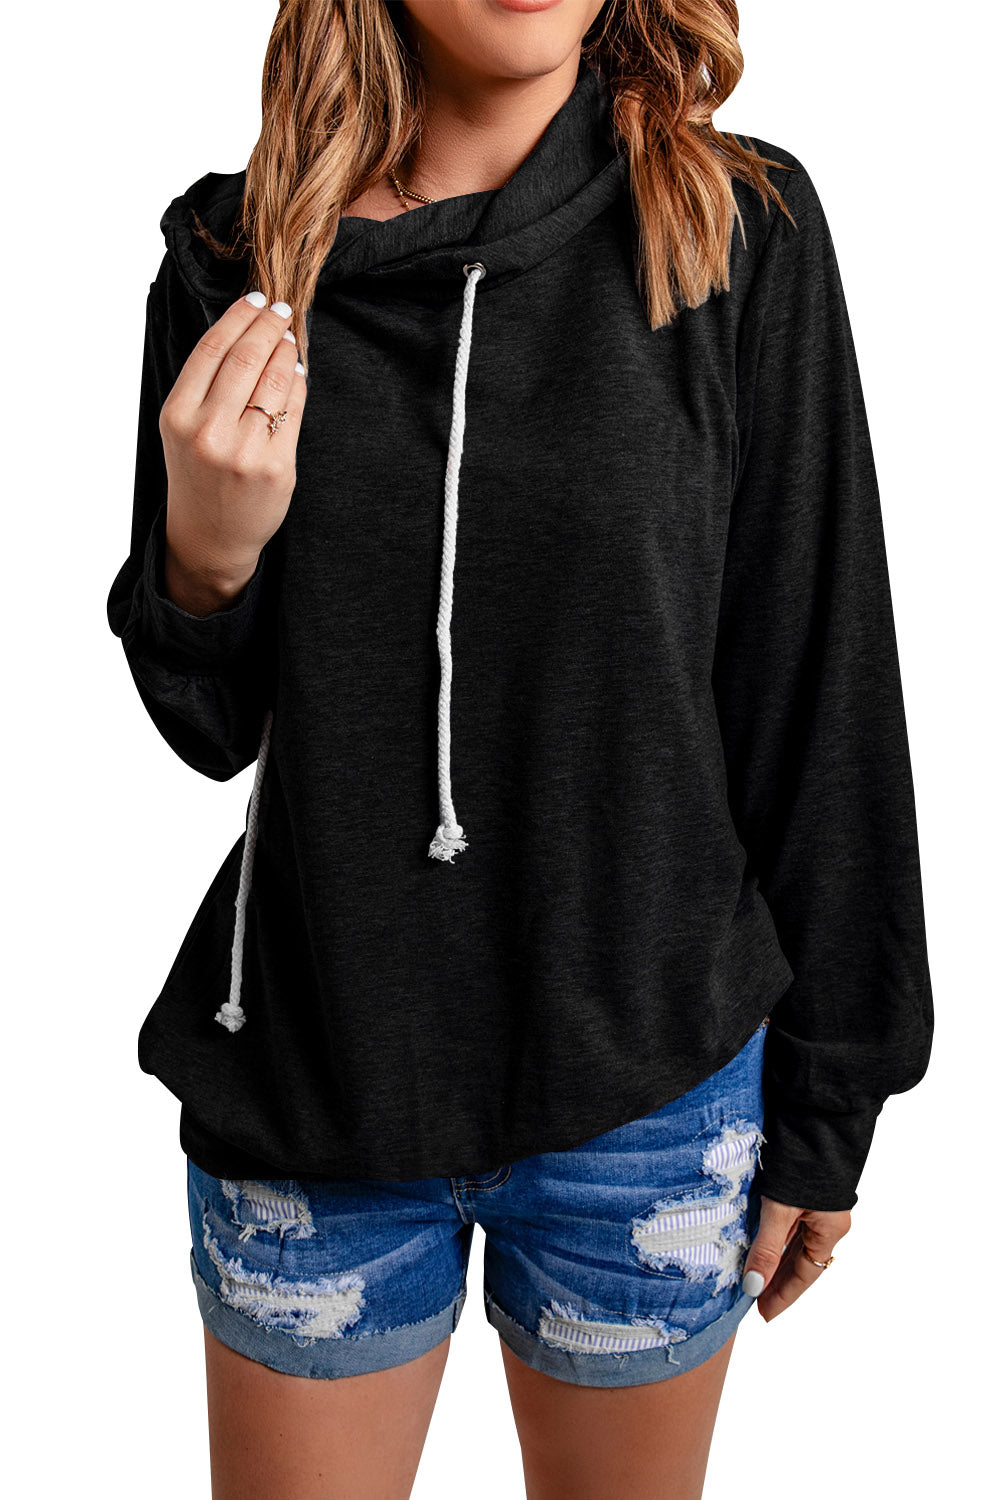 Black Long Sleeve Hoodie with Rope Drawstring Sweatshirts & Hoodies Magenerations